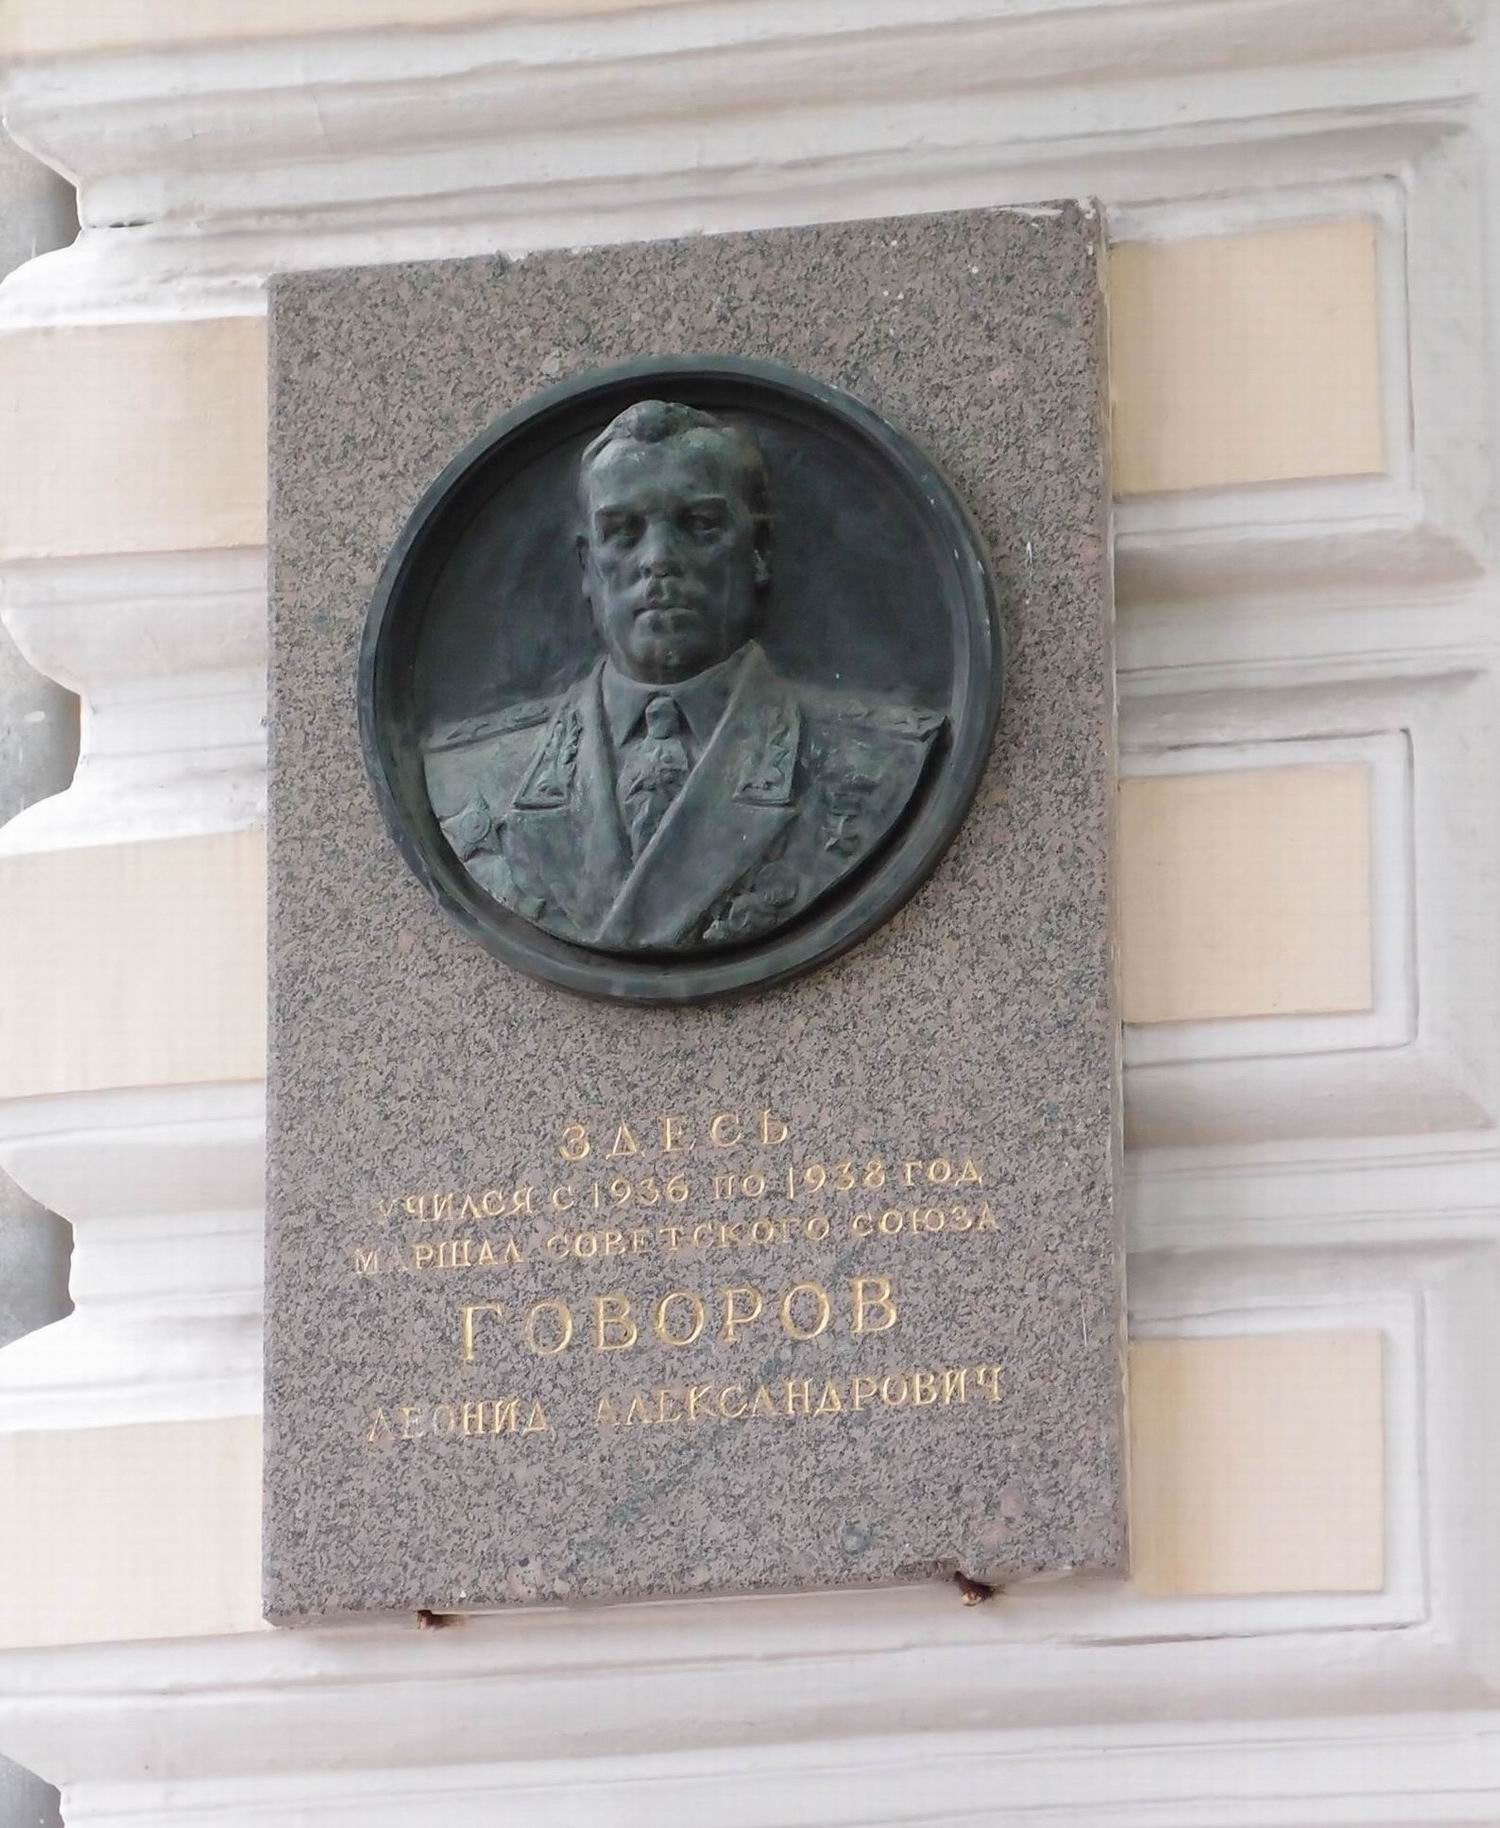 Мемориальная доска Говорову Л.А. (1897–1955), в Хользунова переулке, дом 14.